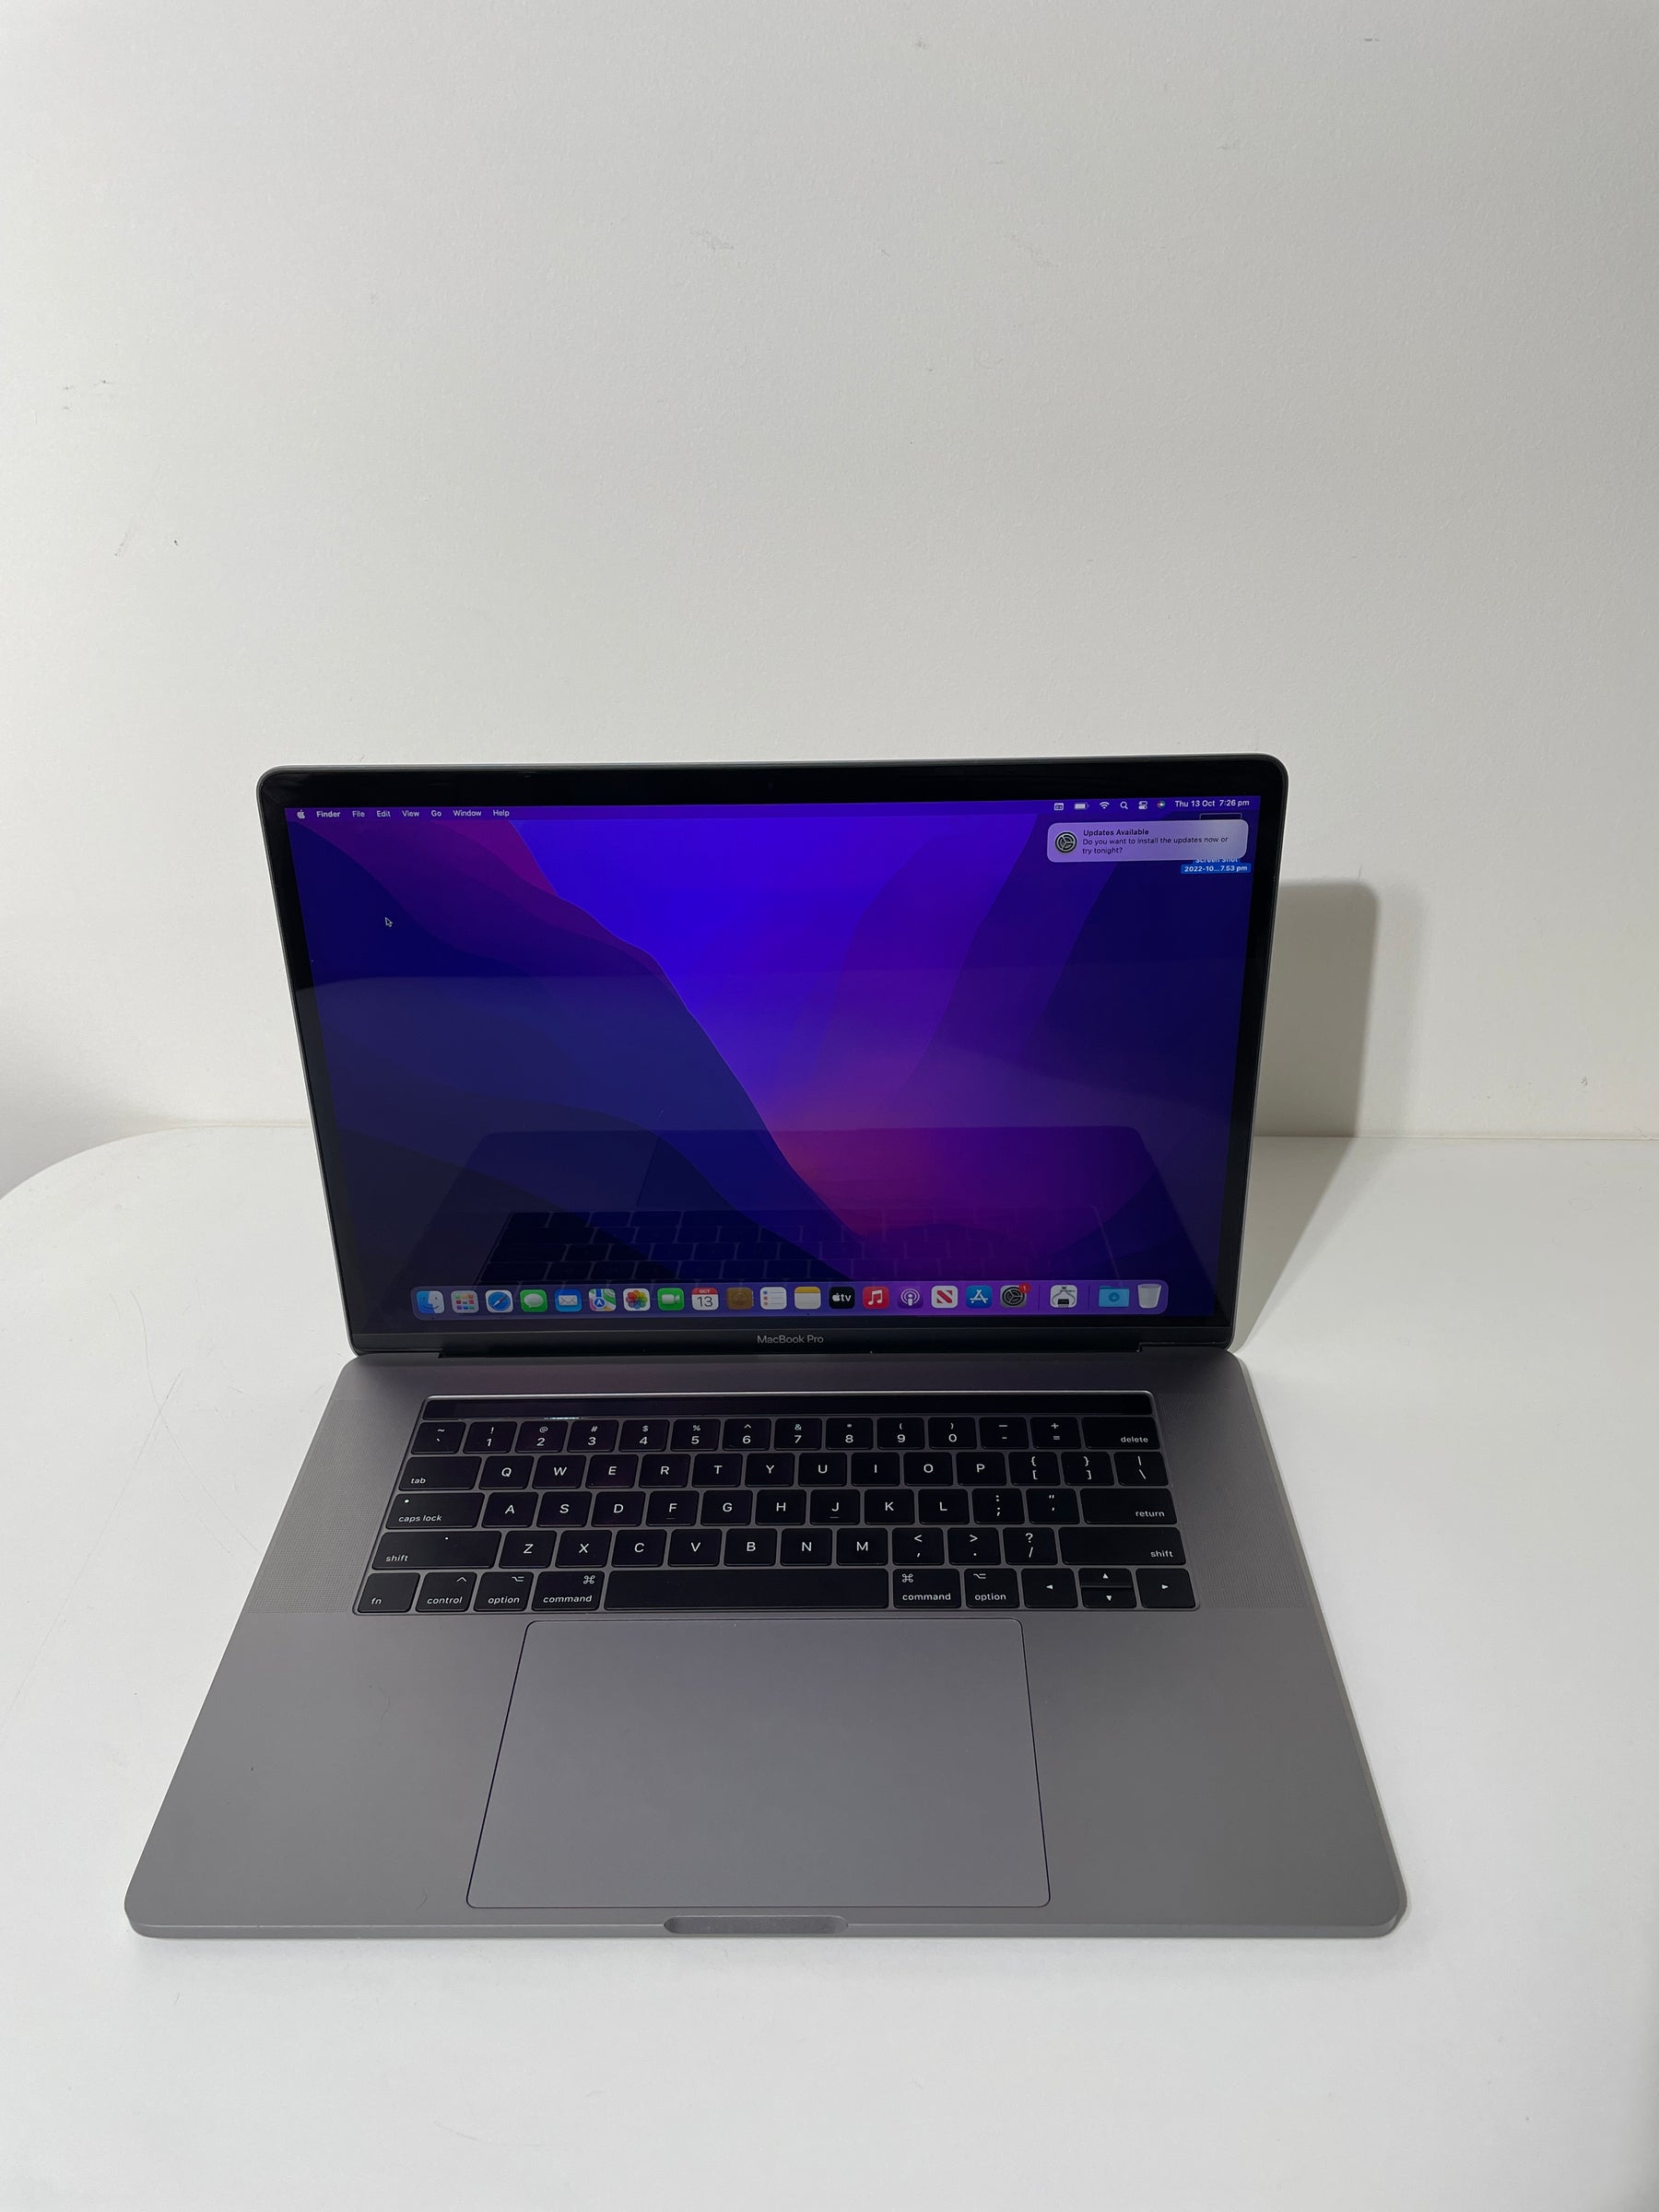 Macbook Pro 15-inch Touchbar - 2017 -  i7 - 16GB - 1TB SSD - Space Grey (Bargains)